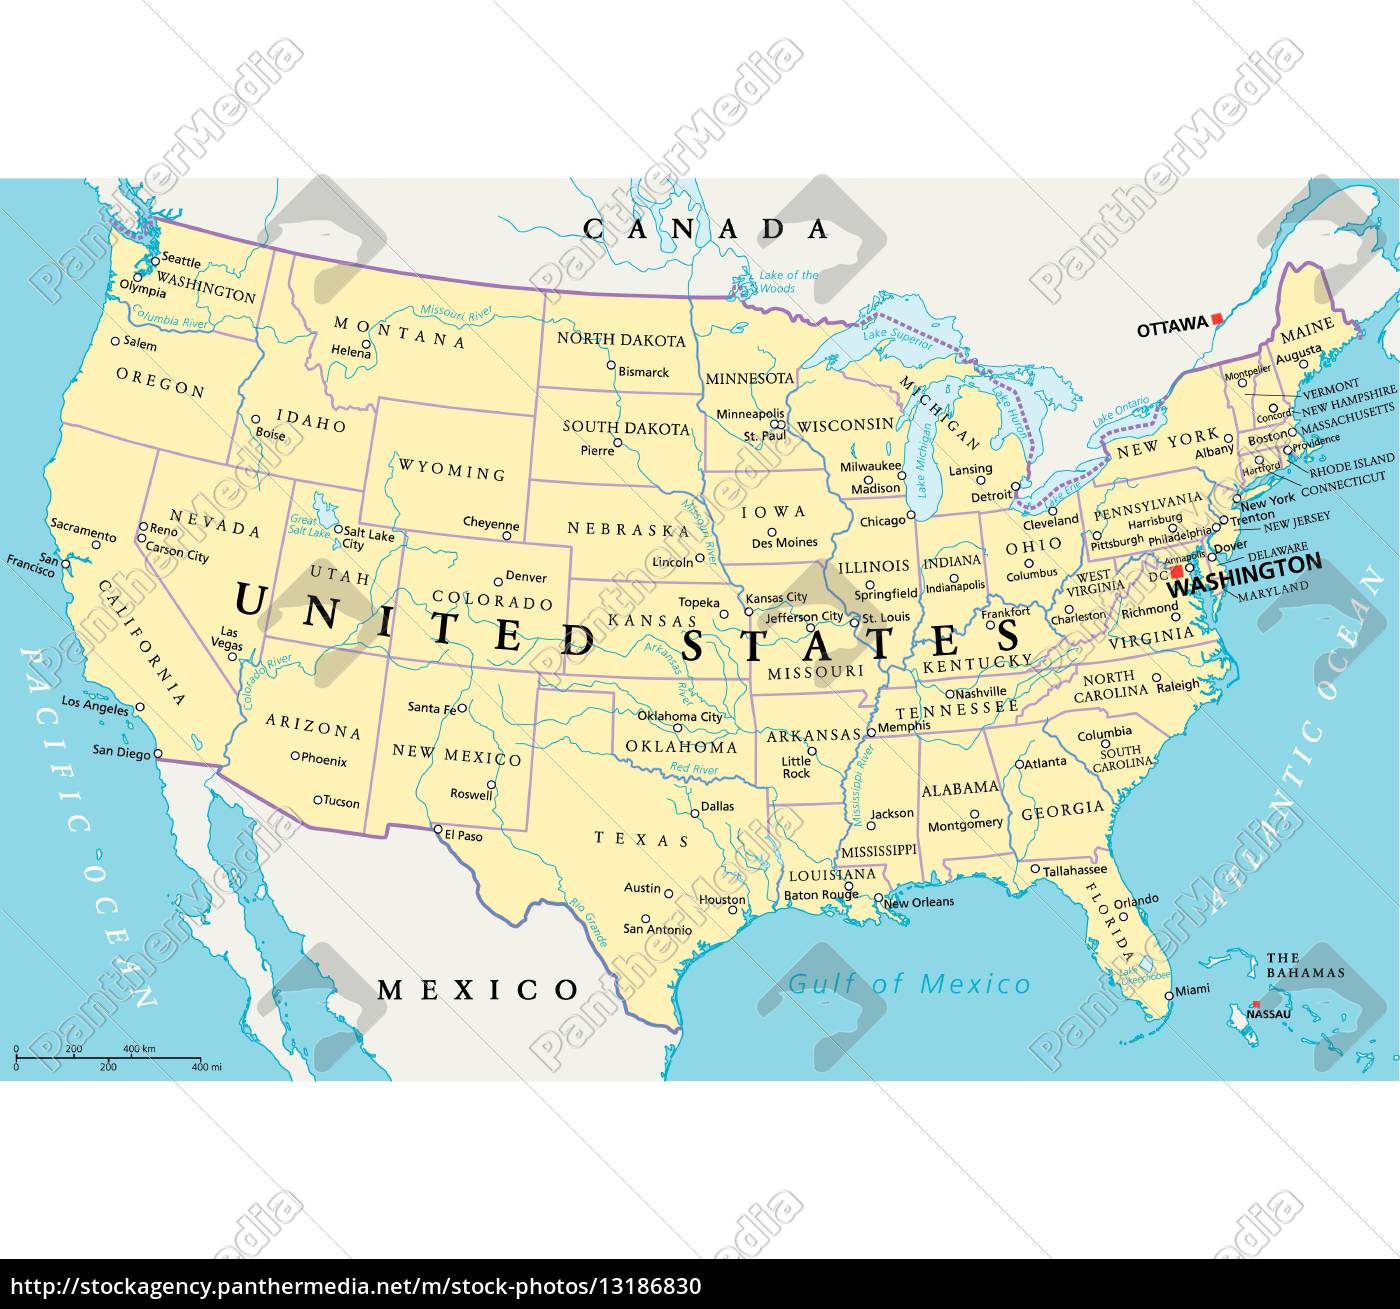 mapa político de los estados unidos de américa - Stockphoto - #13186830